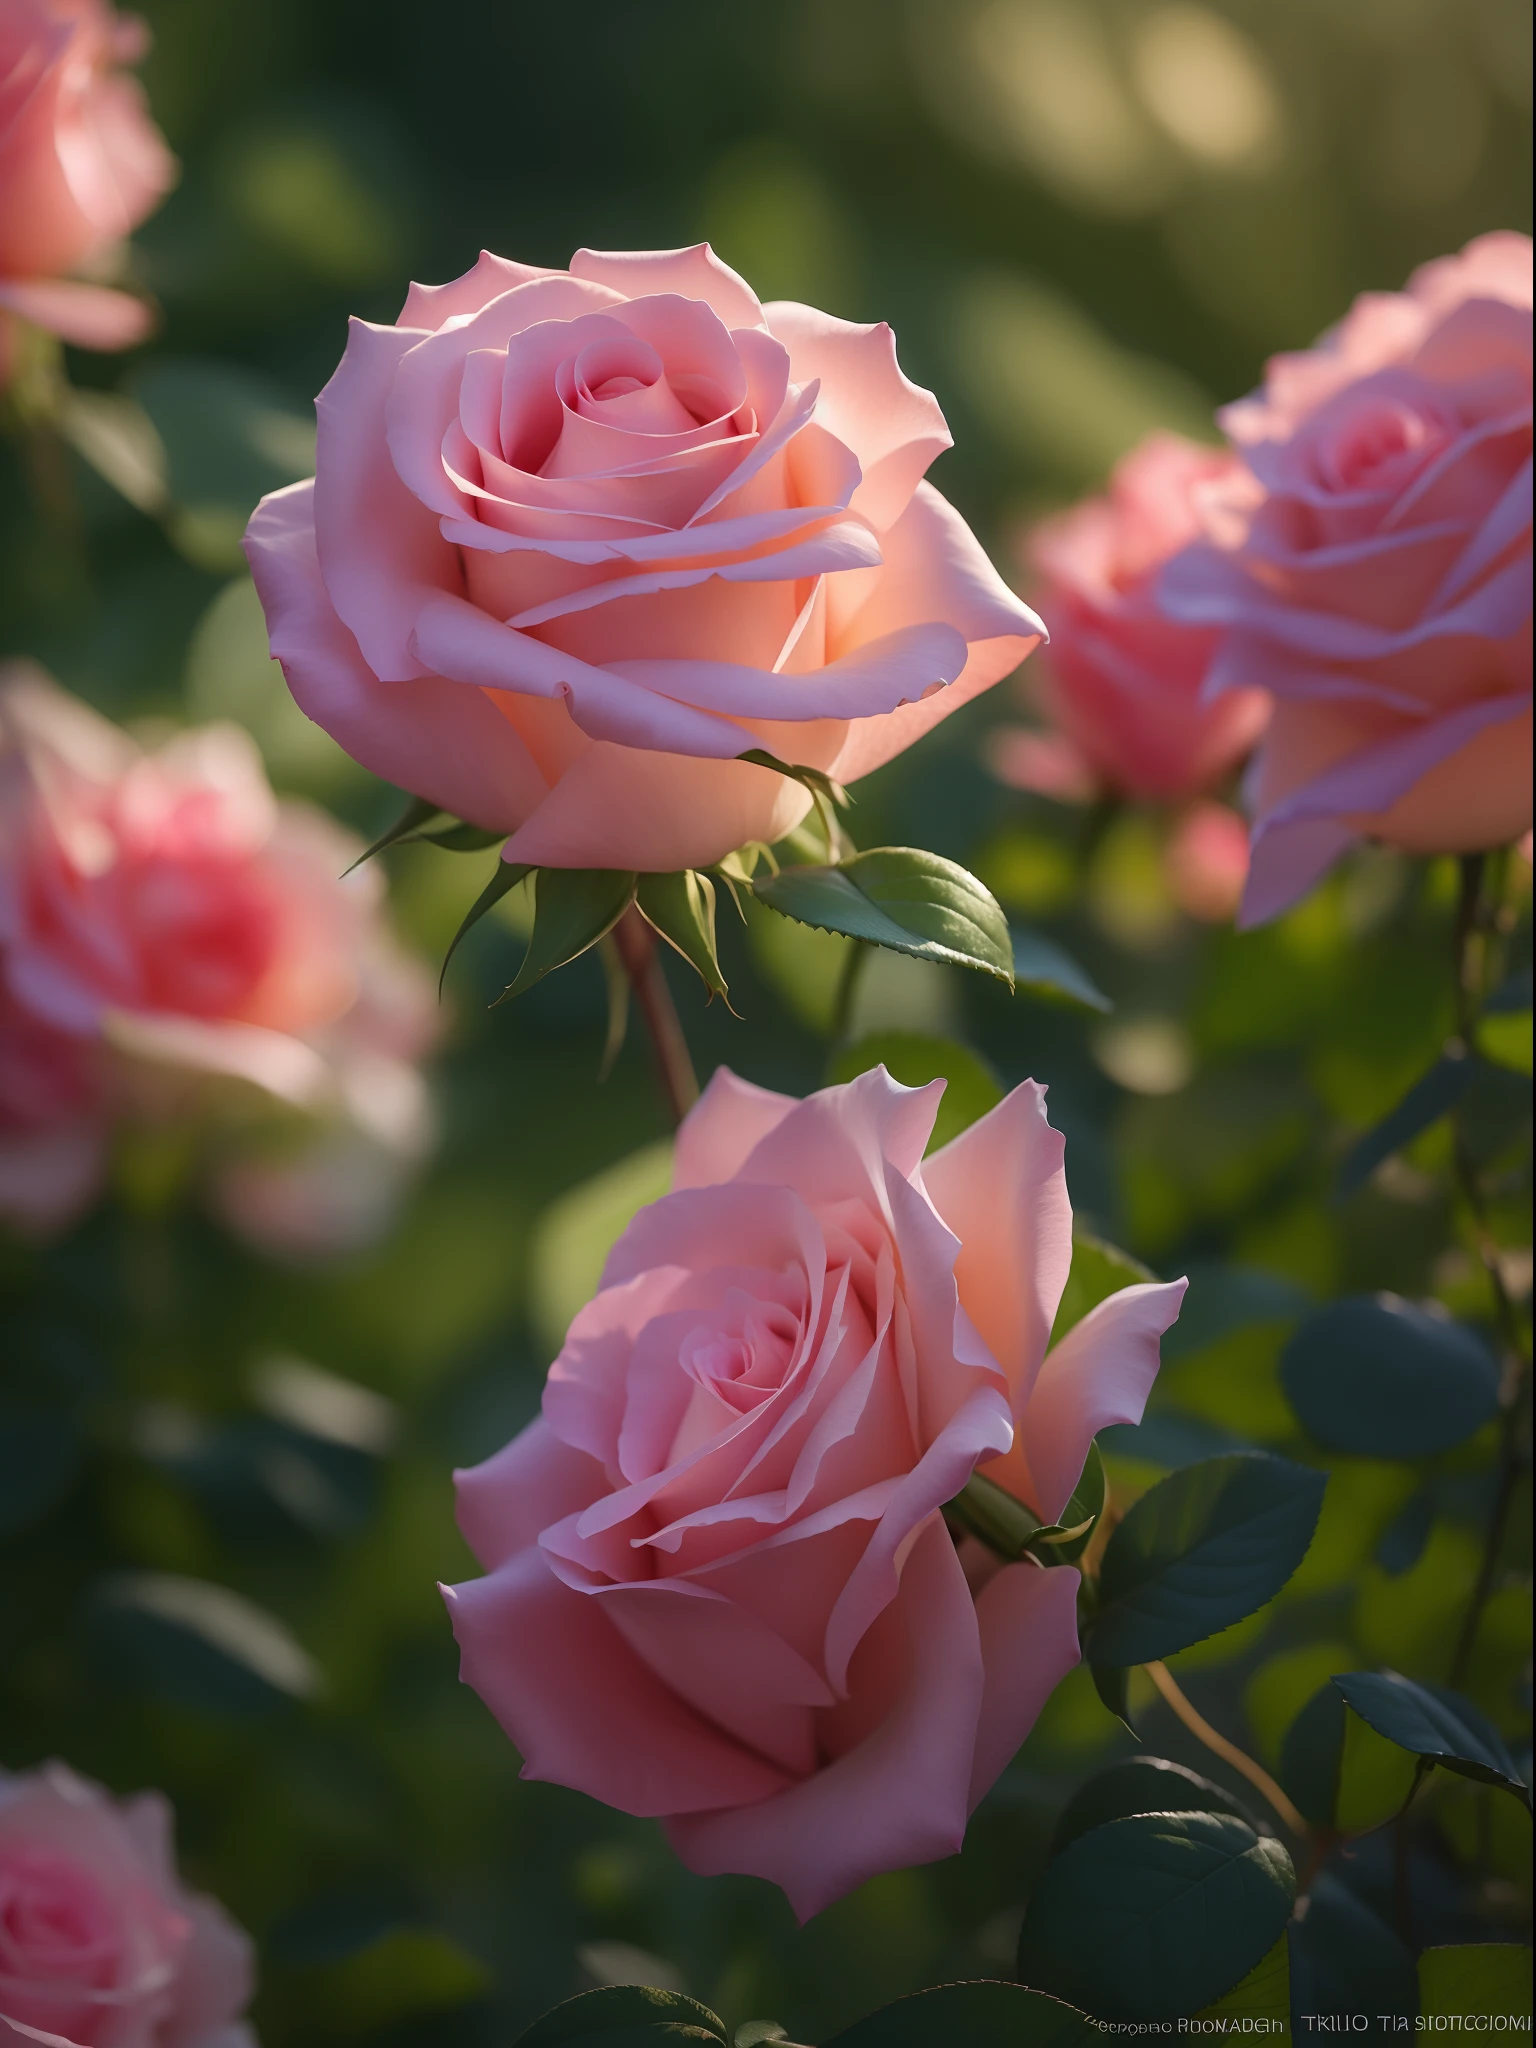 花园里的灌木丛里长着粉红玫瑰, 粉红玫瑰, 电影灯光下的玫瑰, 粉红玫瑰, 川宁玫瑰, 一朵玫瑰的照片, 安娜·尼科诺娃, 带有柔和的粉红色, 使用佳能 5d 拍摄的照片, 柔光 4k 粉色, 使用 pentax k1000 拍摄, 令人难以置信的美丽, 忧郁玫瑰柔和的灯光